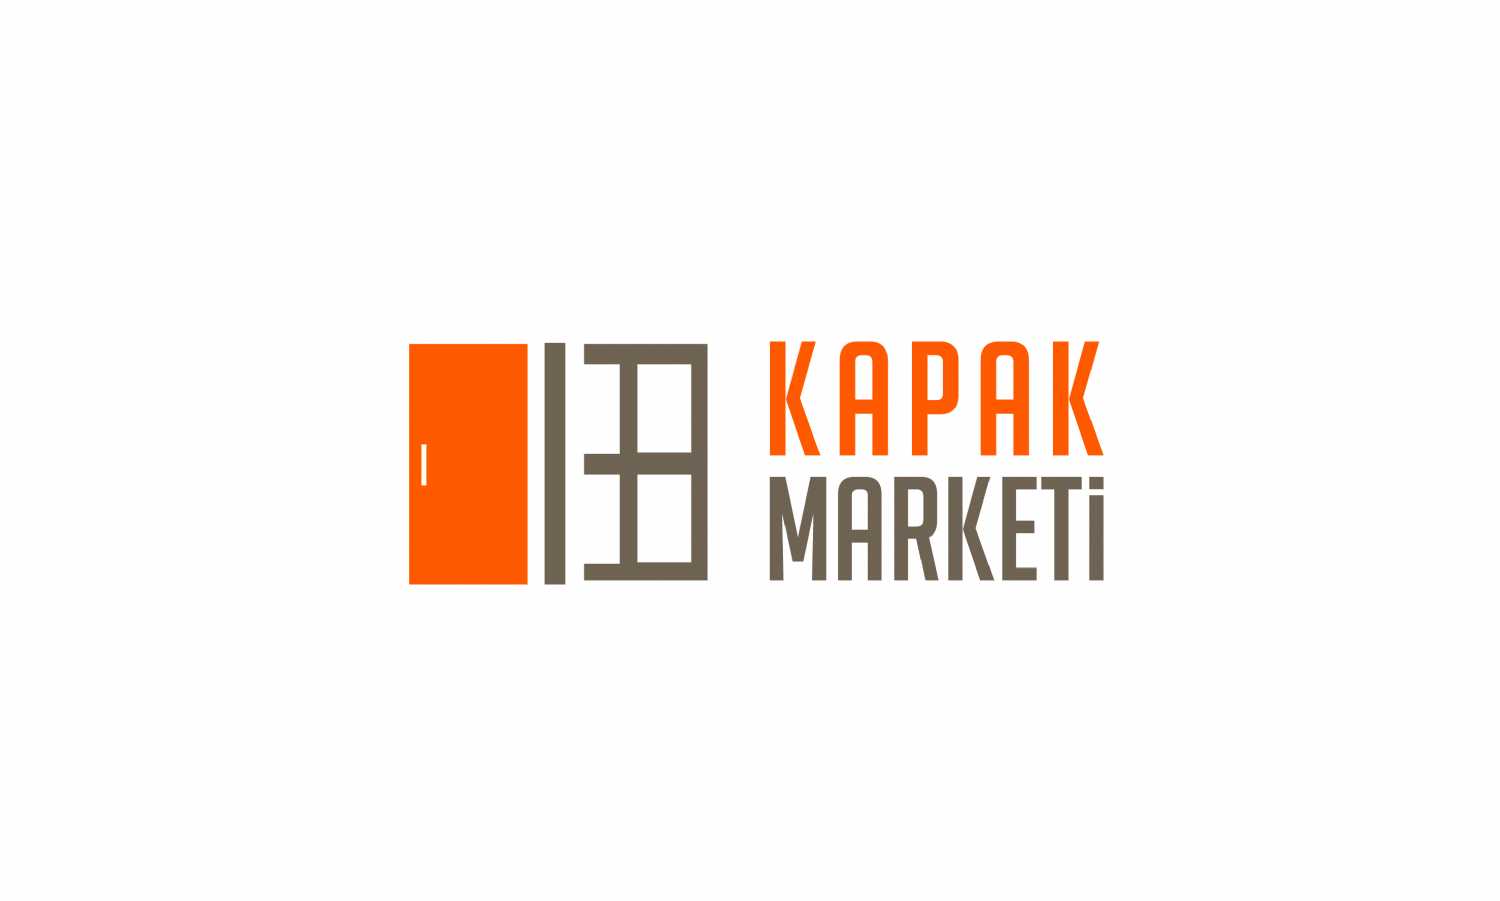 Kapak Marketi Logo